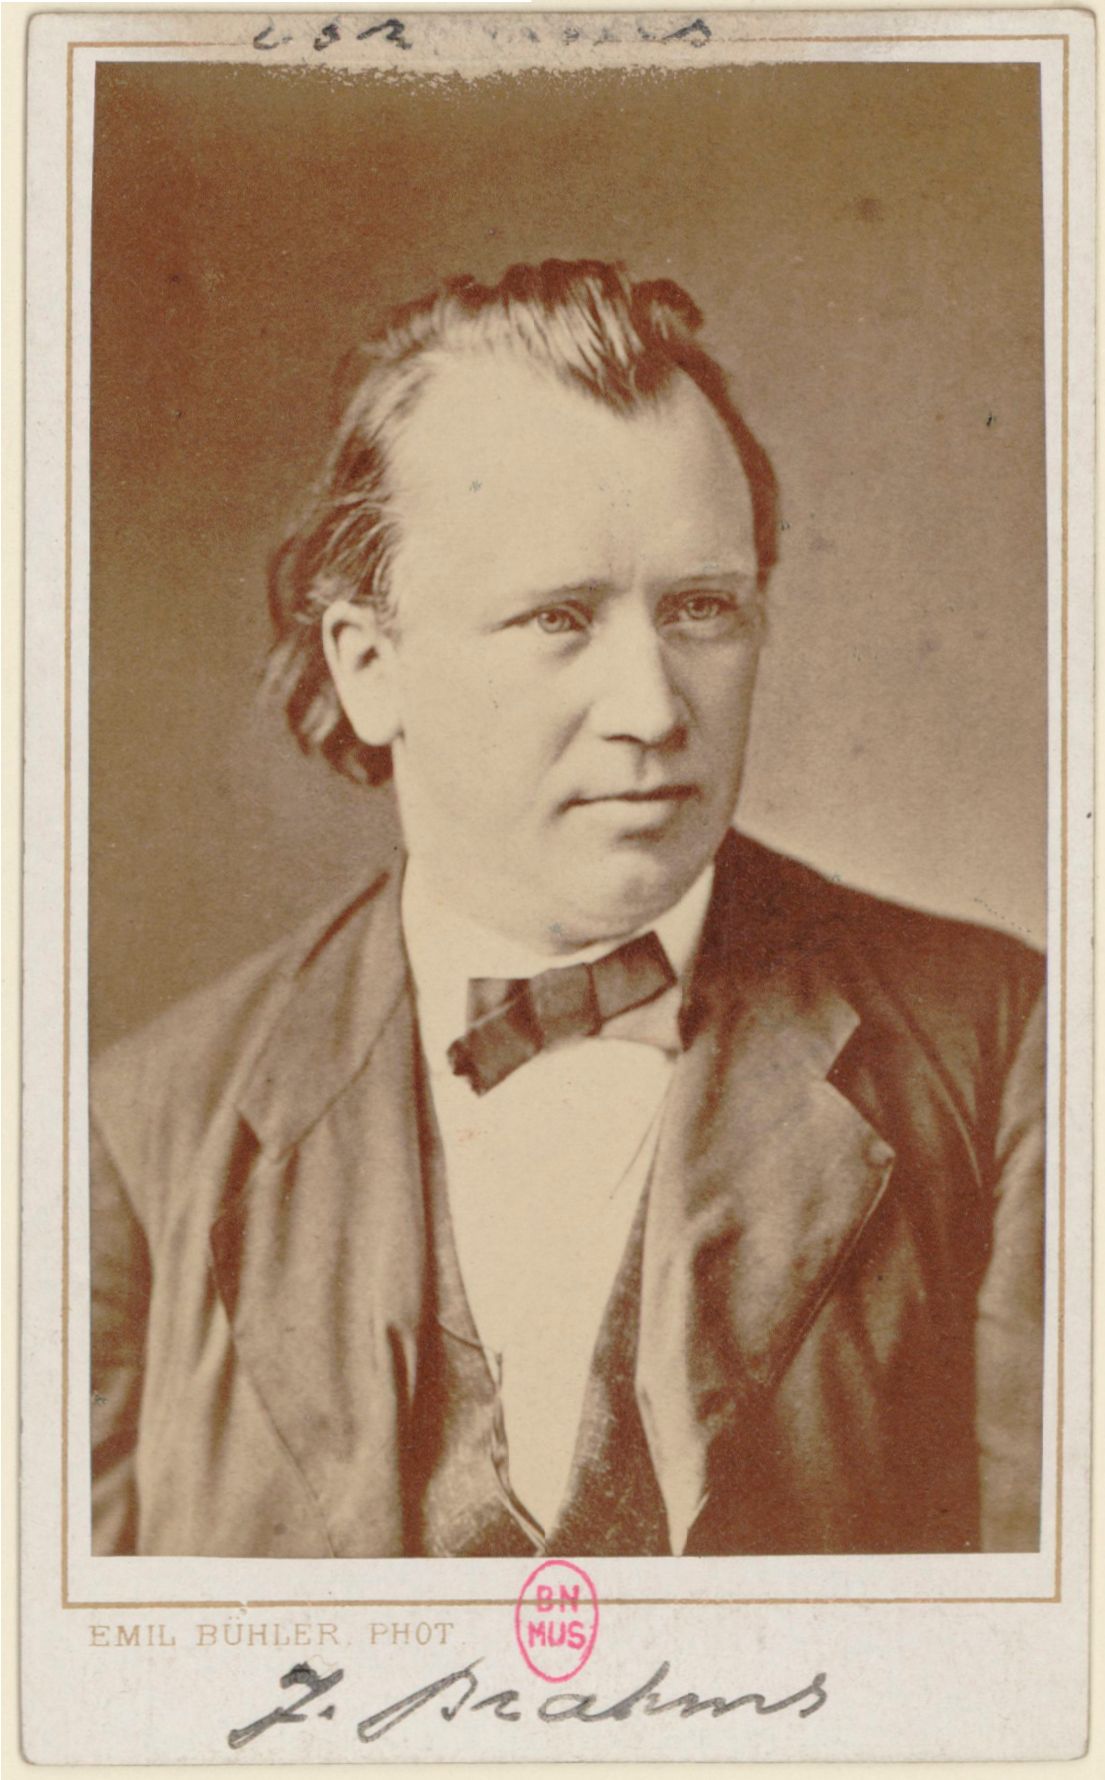 Johannes Brahms / Emil Bühler, photographe, 1875, Droits: domaine public, Identifiant: ark:/12148/btv1b8416006p, Source: Bibliothèque nationale de France